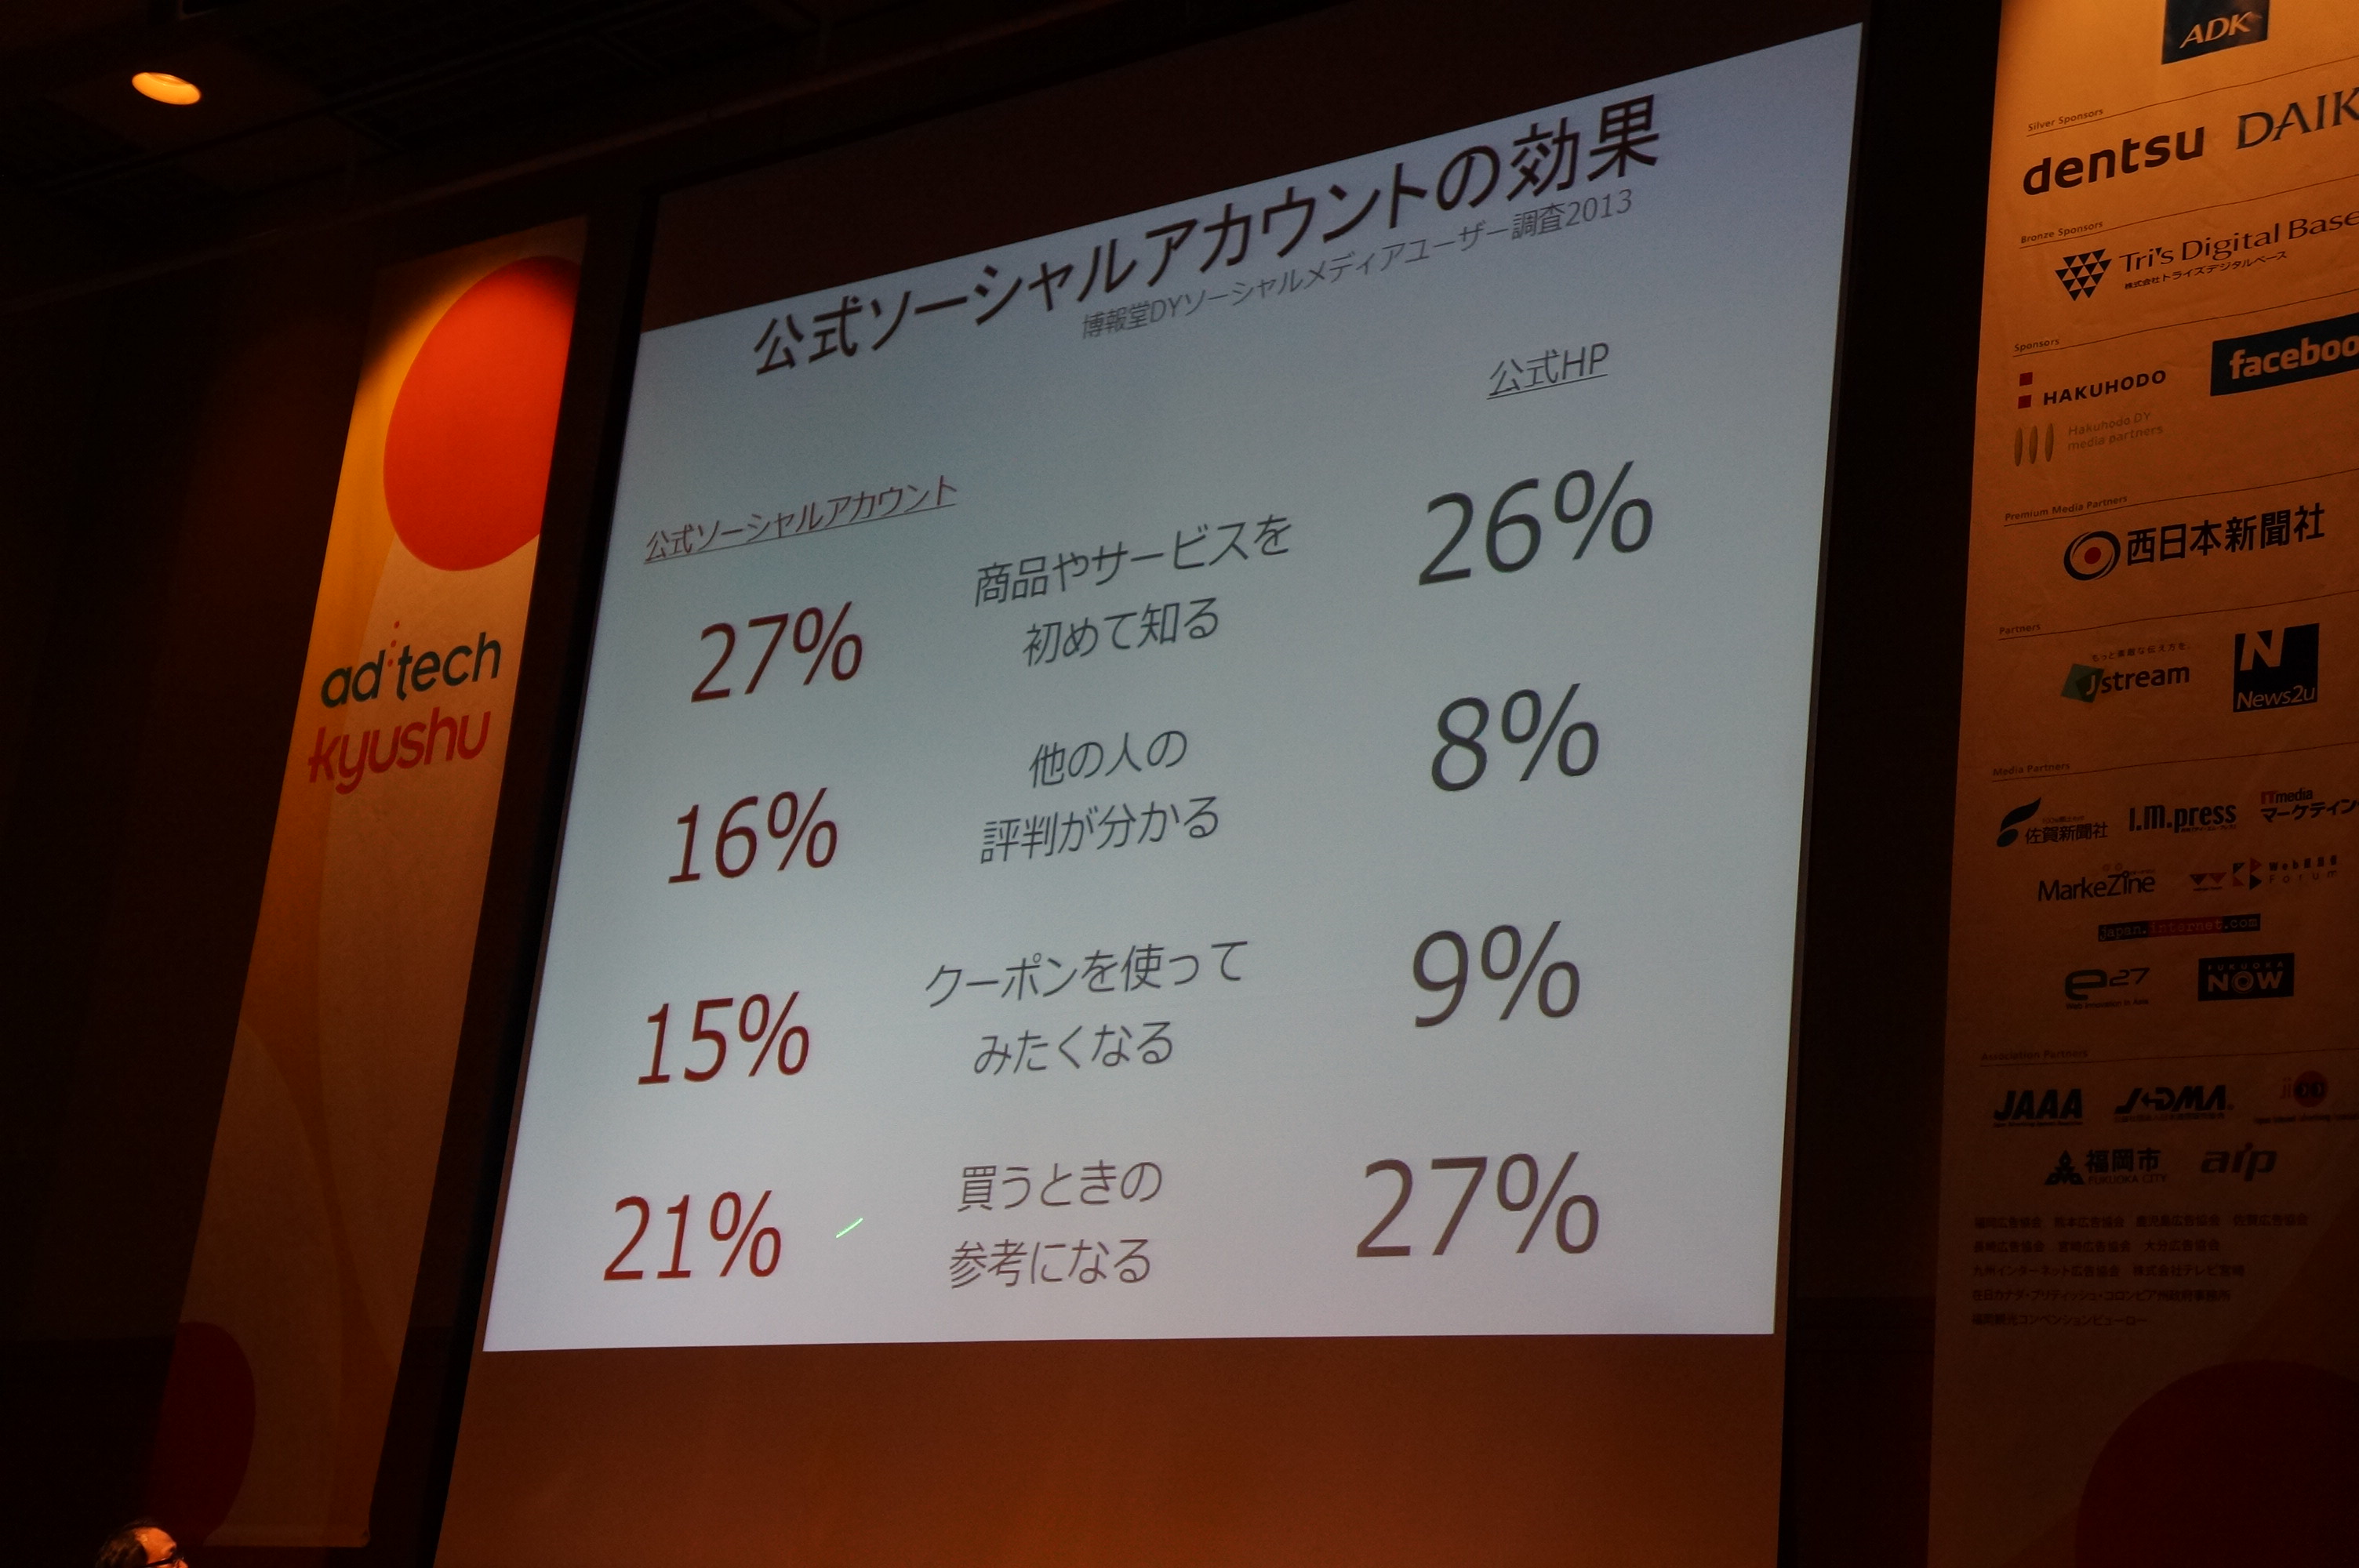 http://nakabi.jp/blog_photo/%E7%B5%B1%E8%A8%88%E8%B3%87%E6%96%99%EF%BC%91.JPG